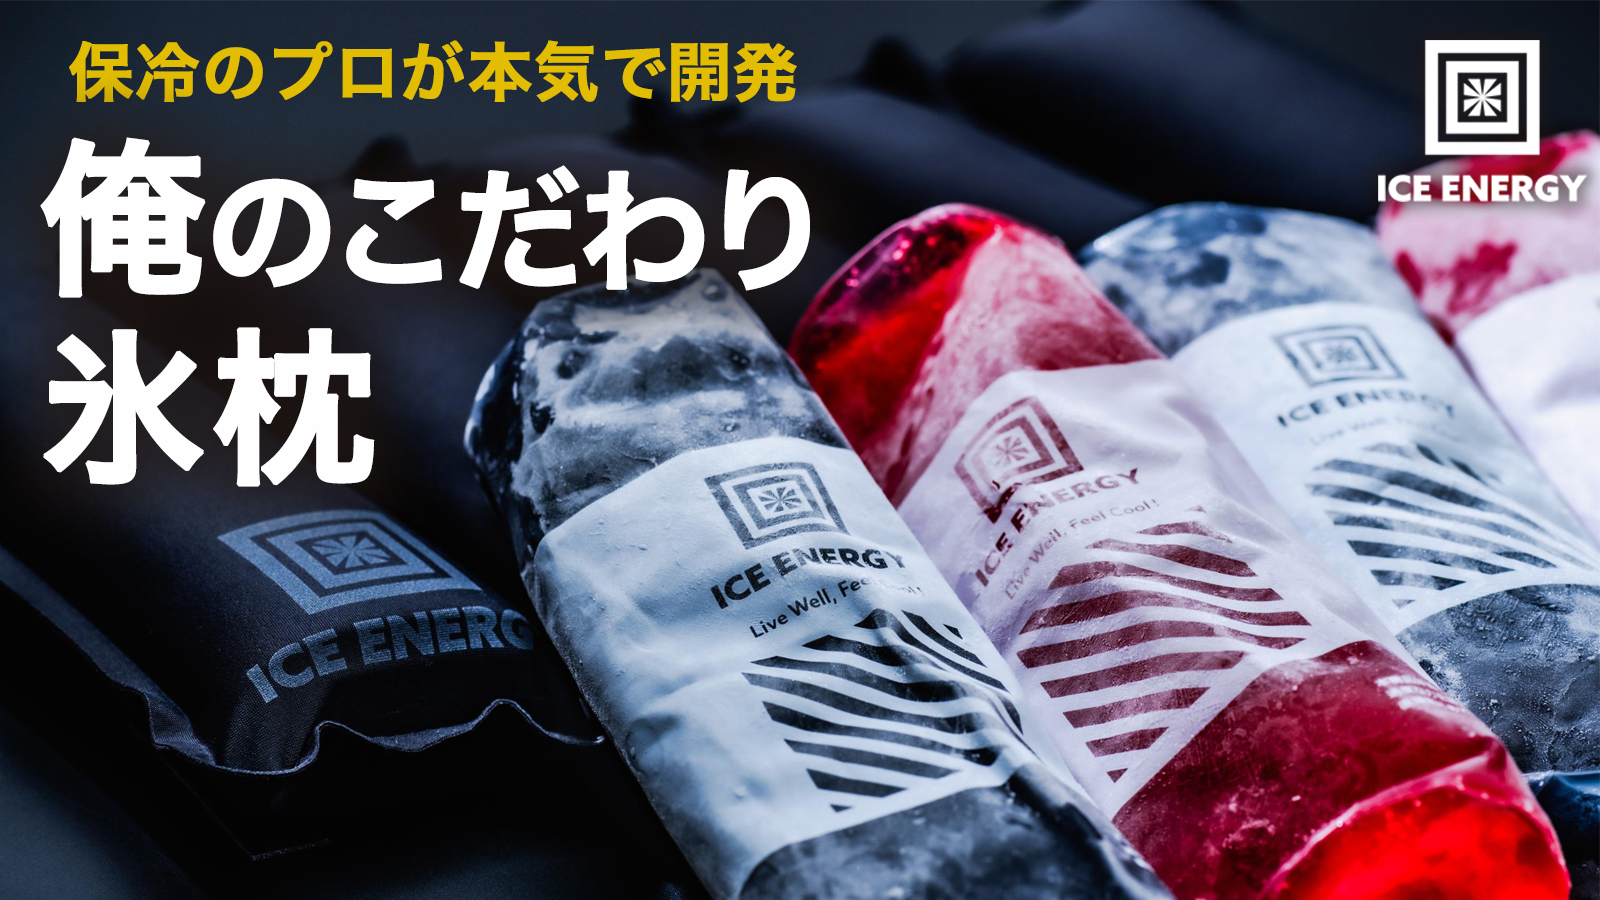 日本初のフードシェイク「 epono 」が、4月下旬より全国の「ロフト」で順次販売開始！ さらに販売を記念して、銀座ロフトで「epono 試食会」を開催